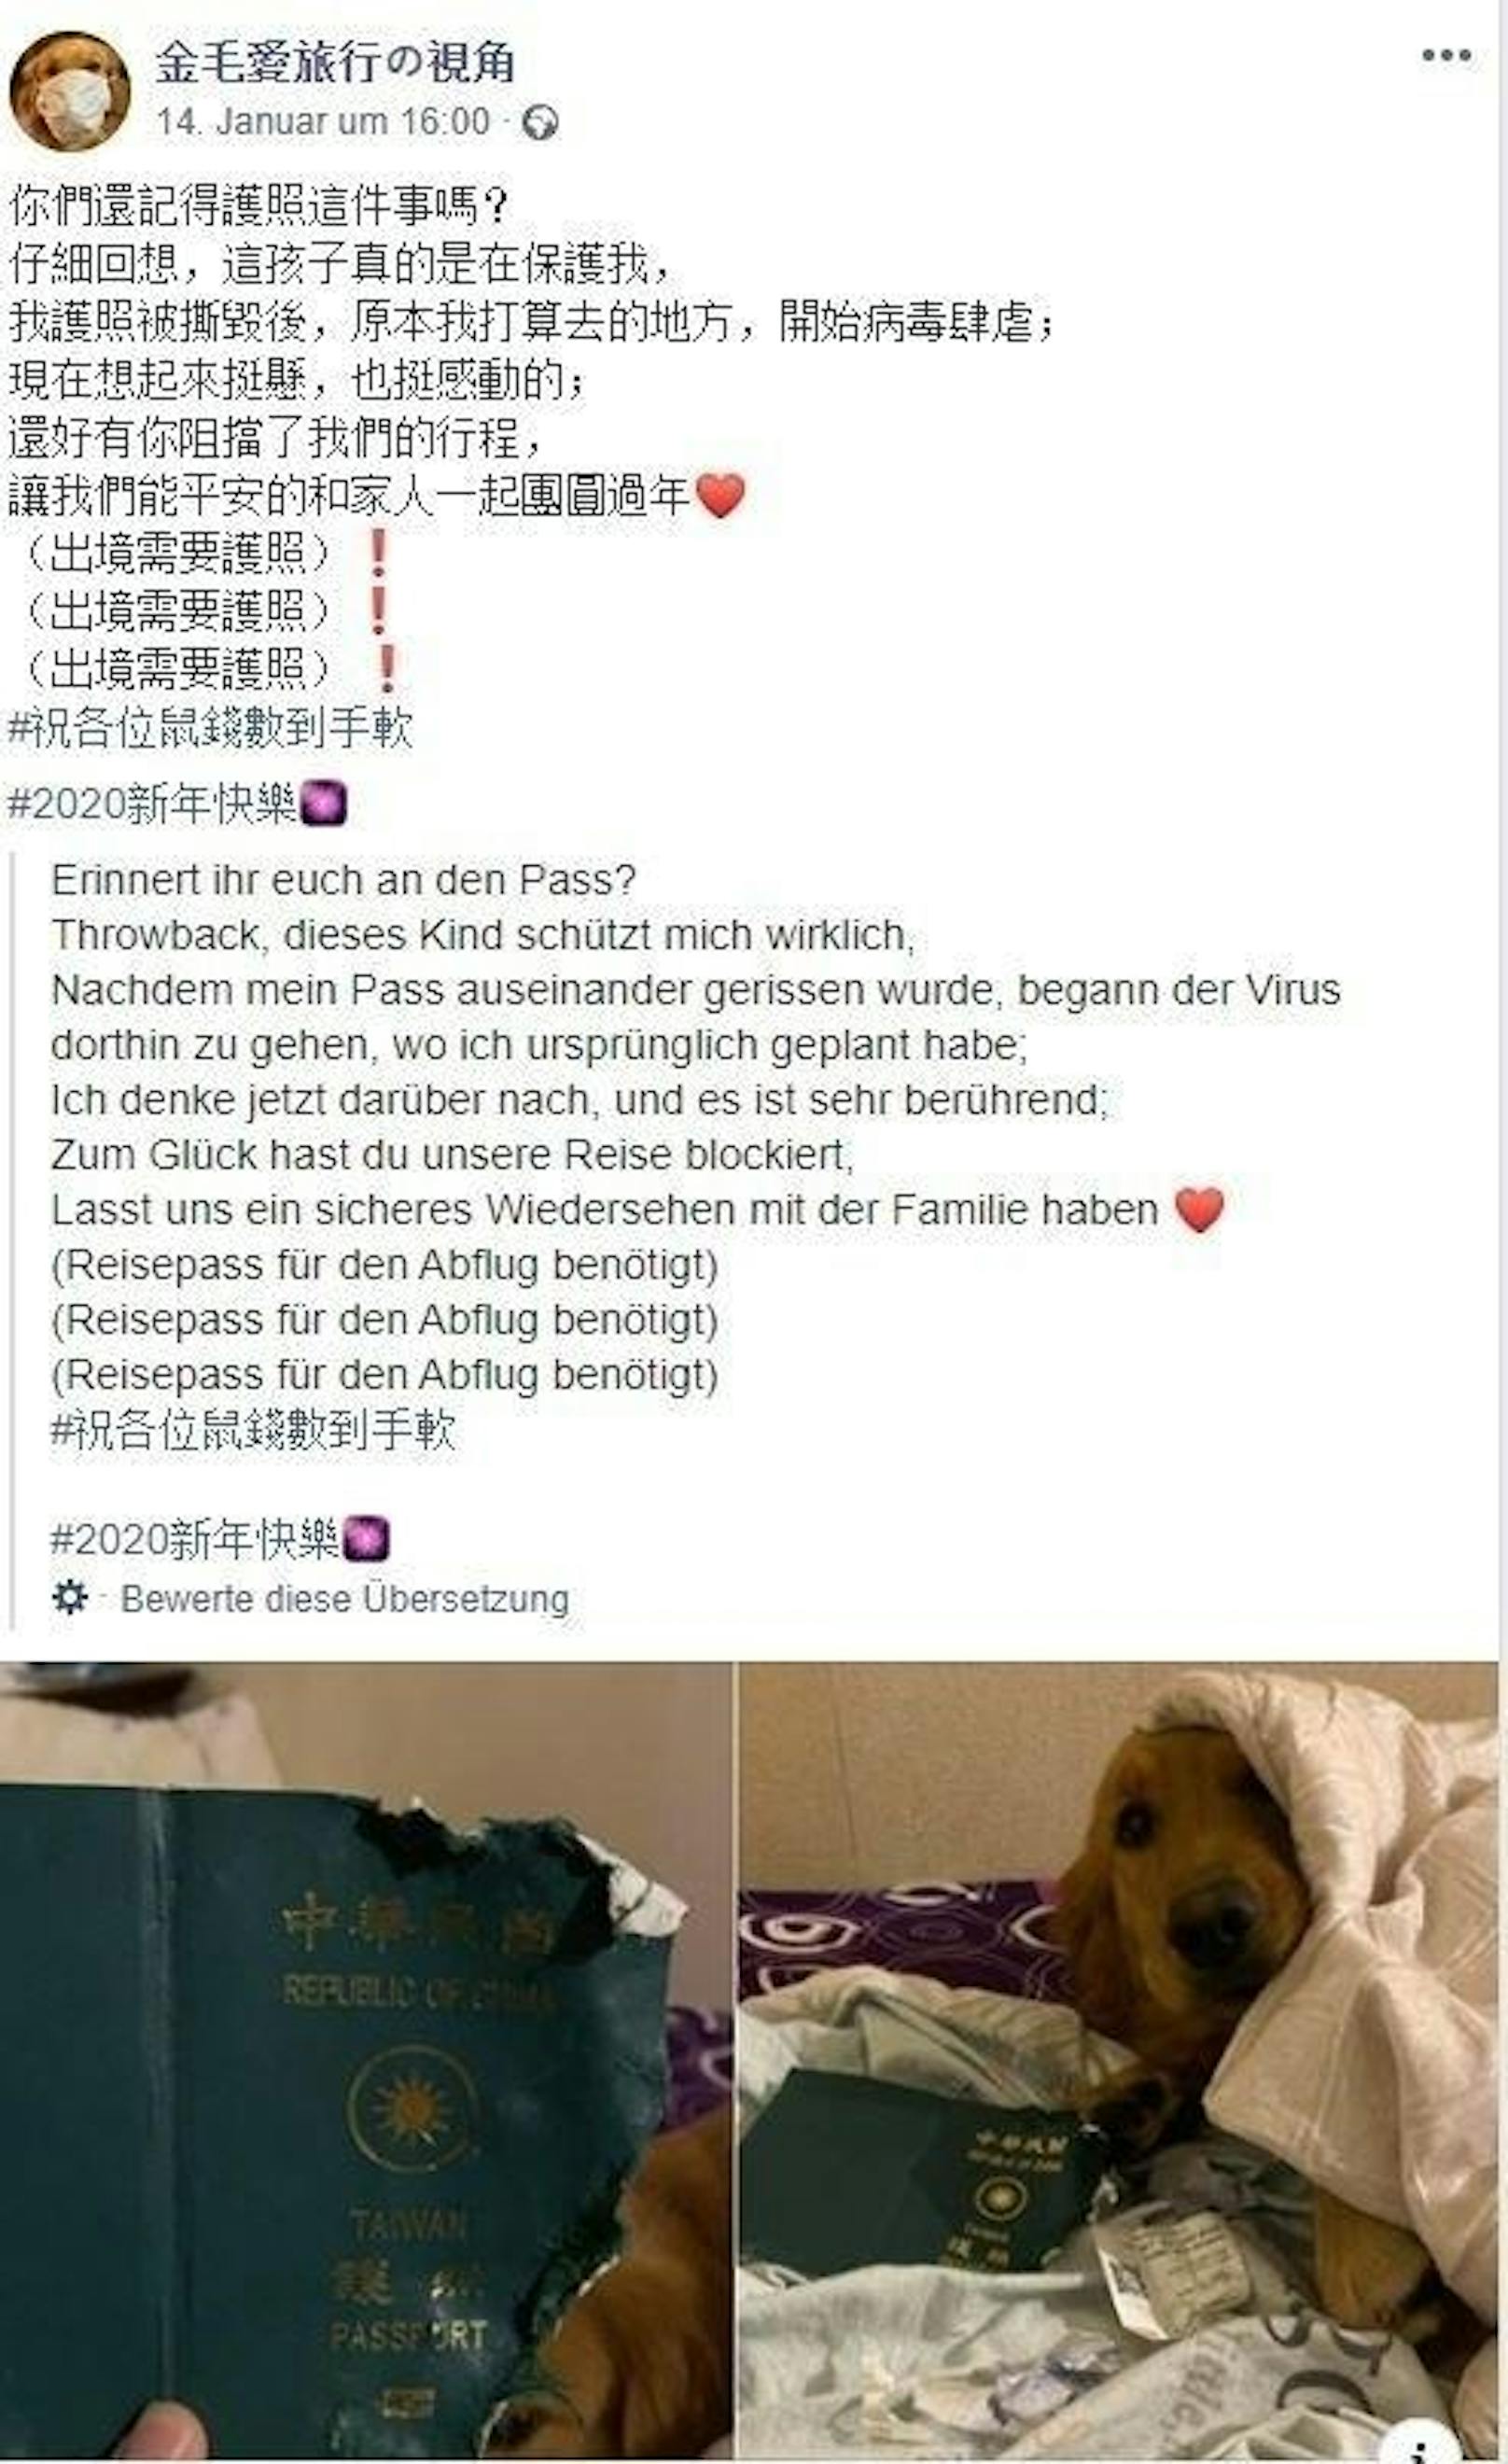 Kurz darauf bricht in Wuhan der Coronavirus aus. Das ändert alles! Frauchen dankt Hund Kimi dafür, dass sie ihren Pass zerstört hat und nicht nach Wuhan fliegen konnte.